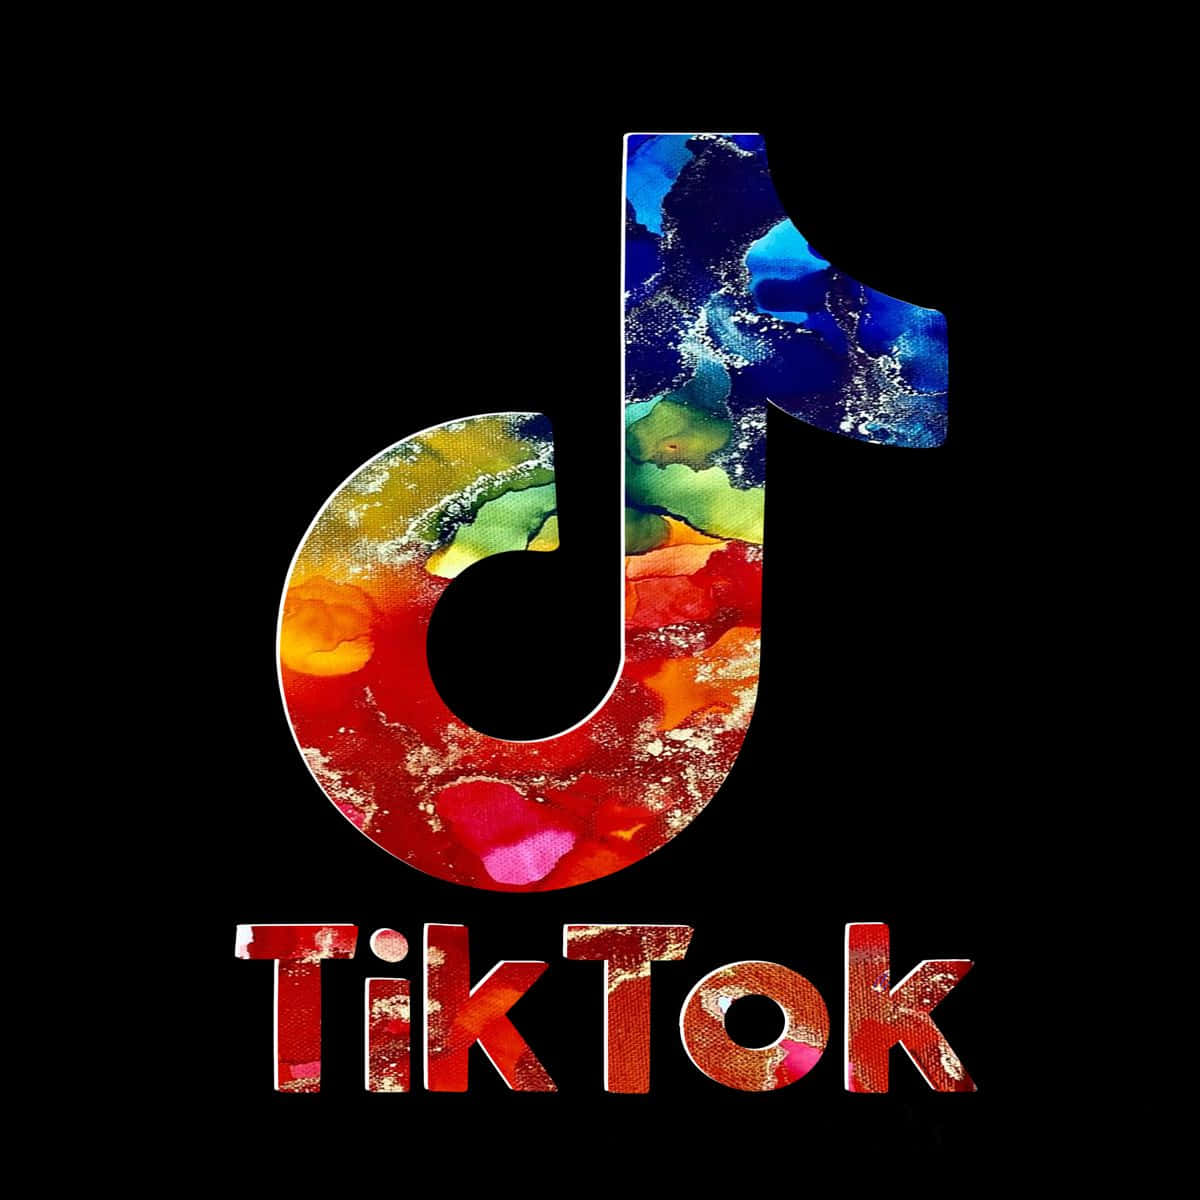 TikTok Logo et symbole, sens, histoire, PNG, marque